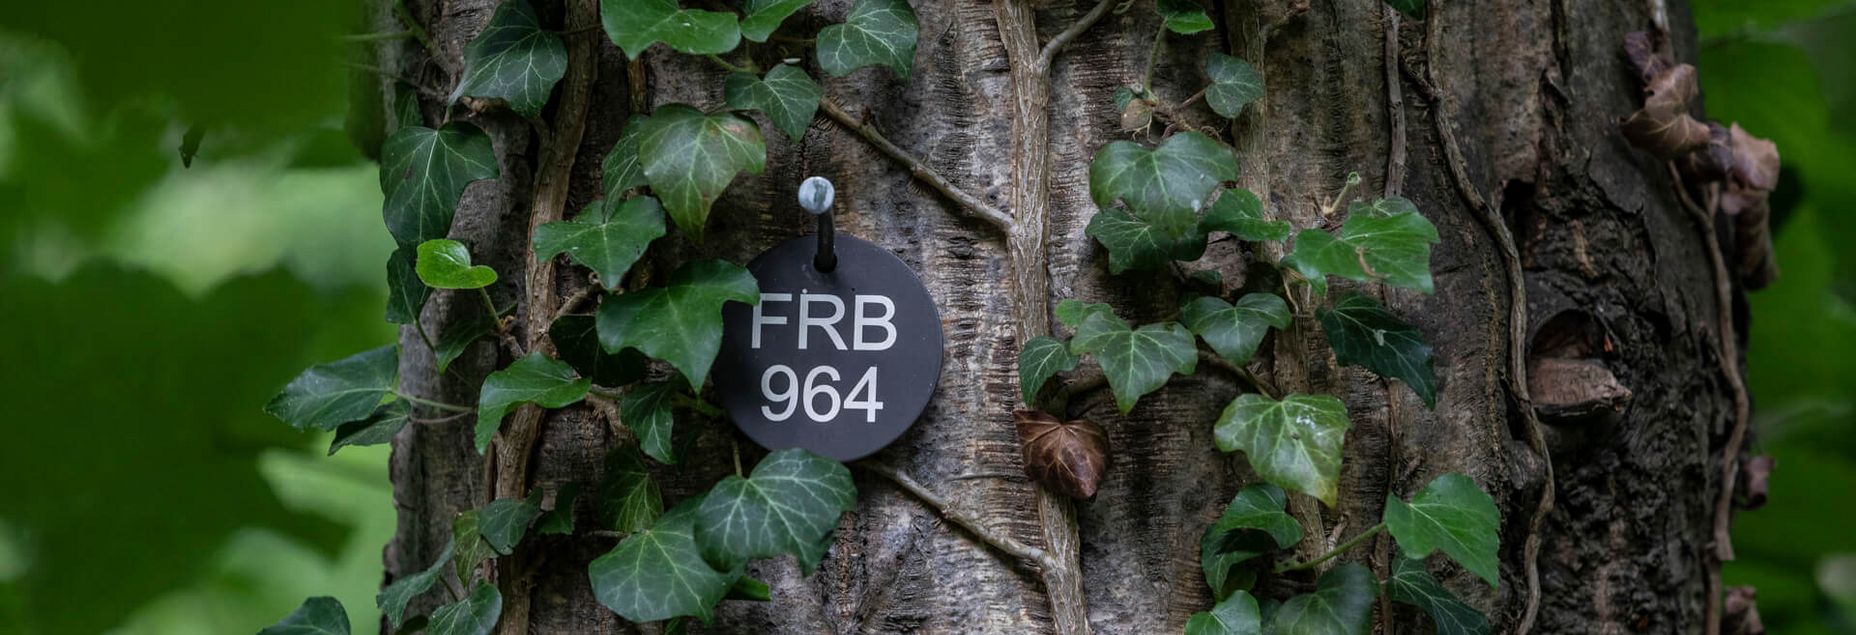 FRB 964 - Plakette